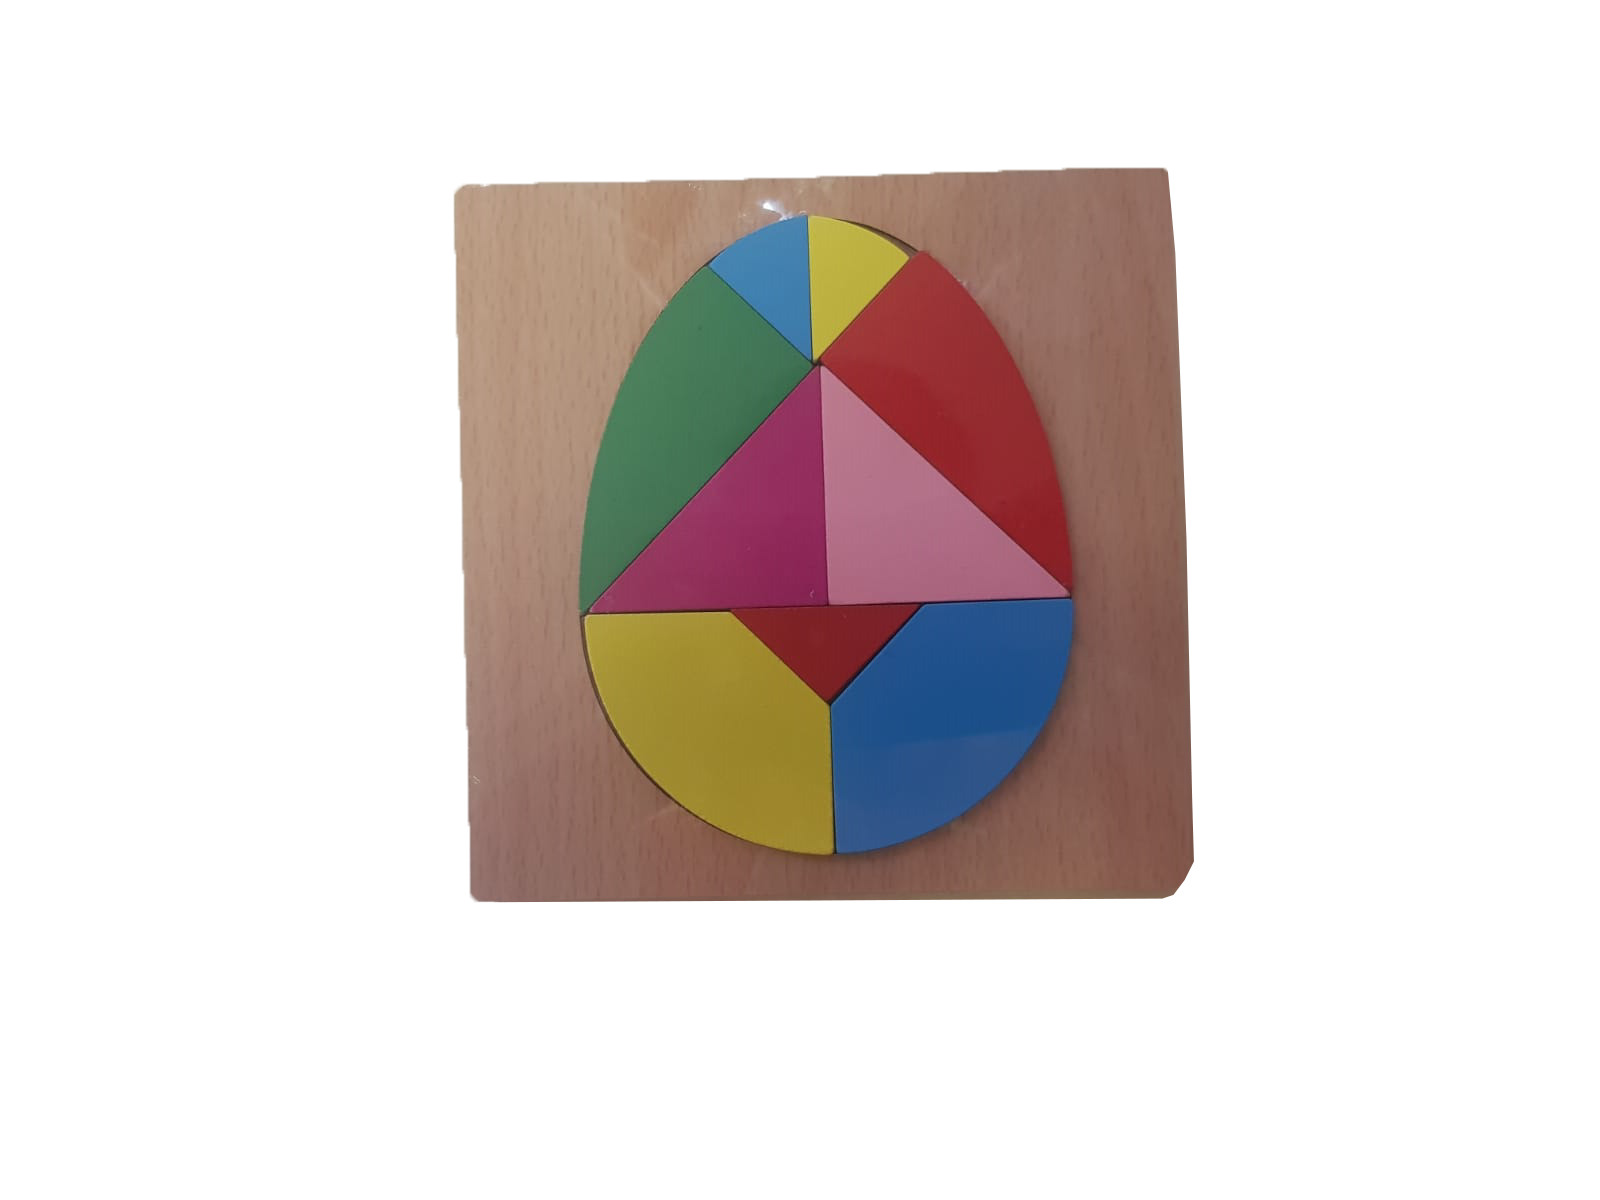 Pachetul contine: Jucarie educativa   puzzle din lemn Curcubeu cu piese de diferite dimensiuni, forme si culori, cu ajutorul lor cei mici dar si cei mari, pot realiza diferite forme geometrice .

 